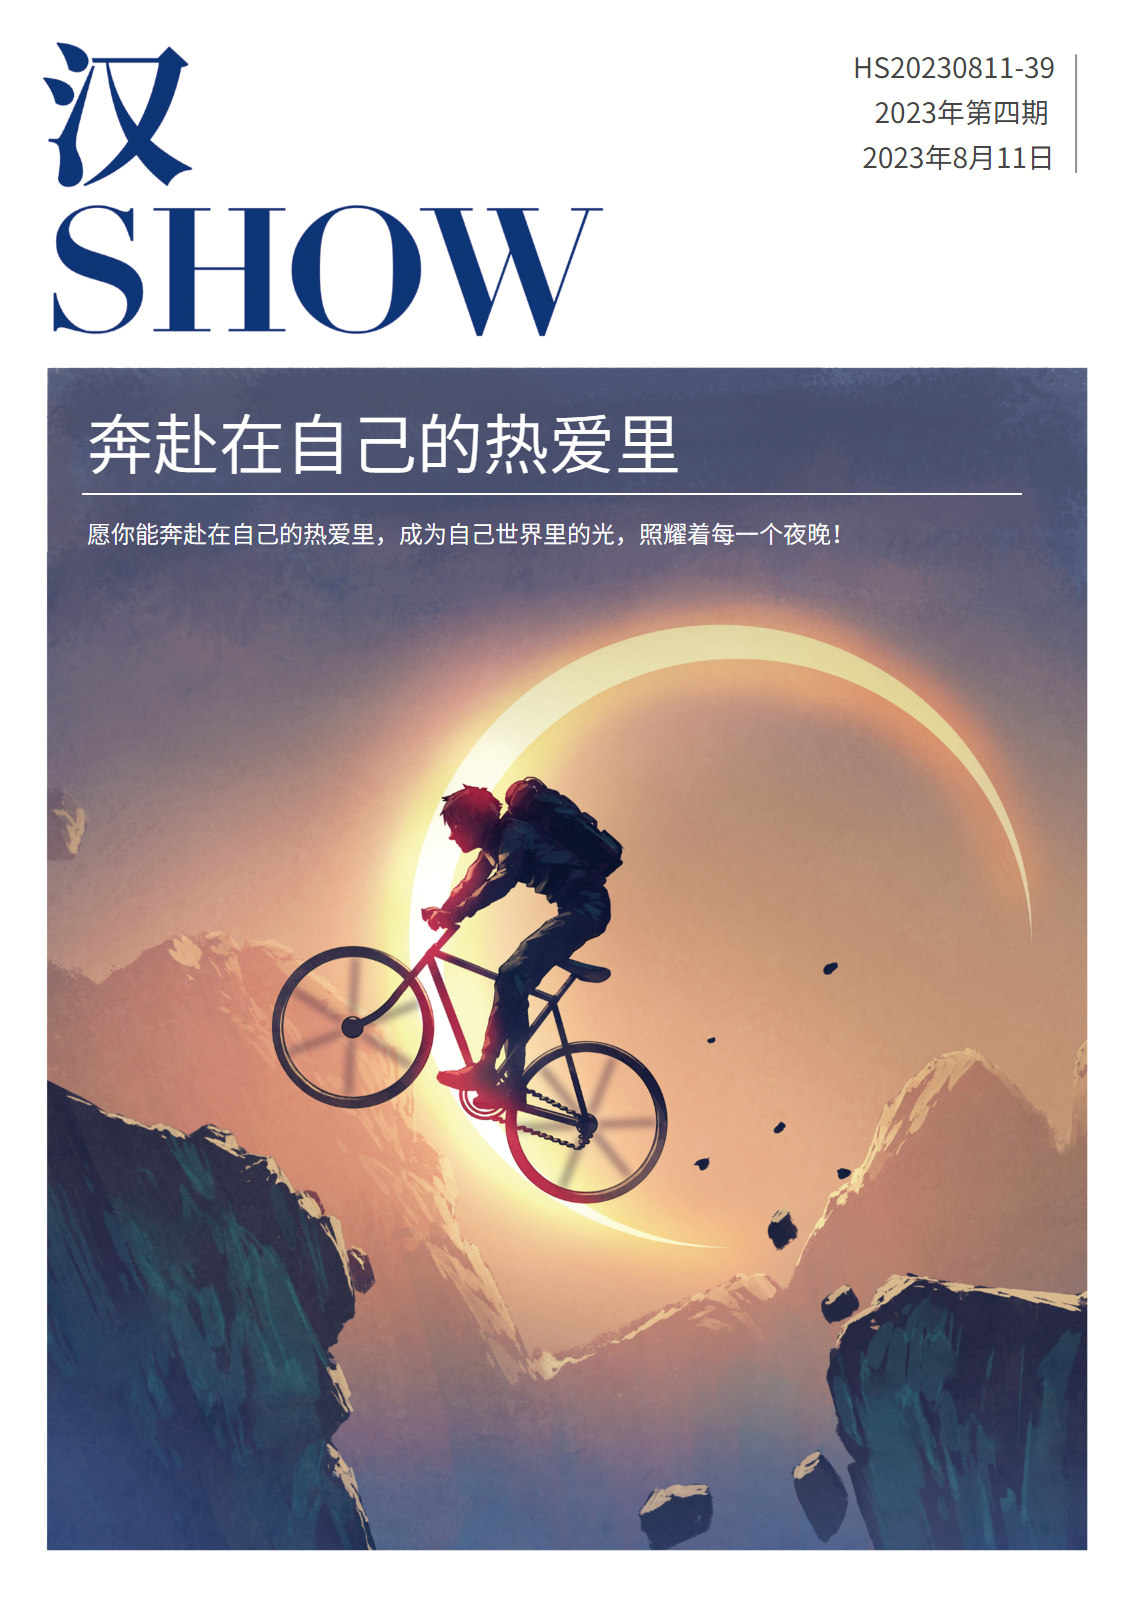 《汉Show》第四期(2023)-中文